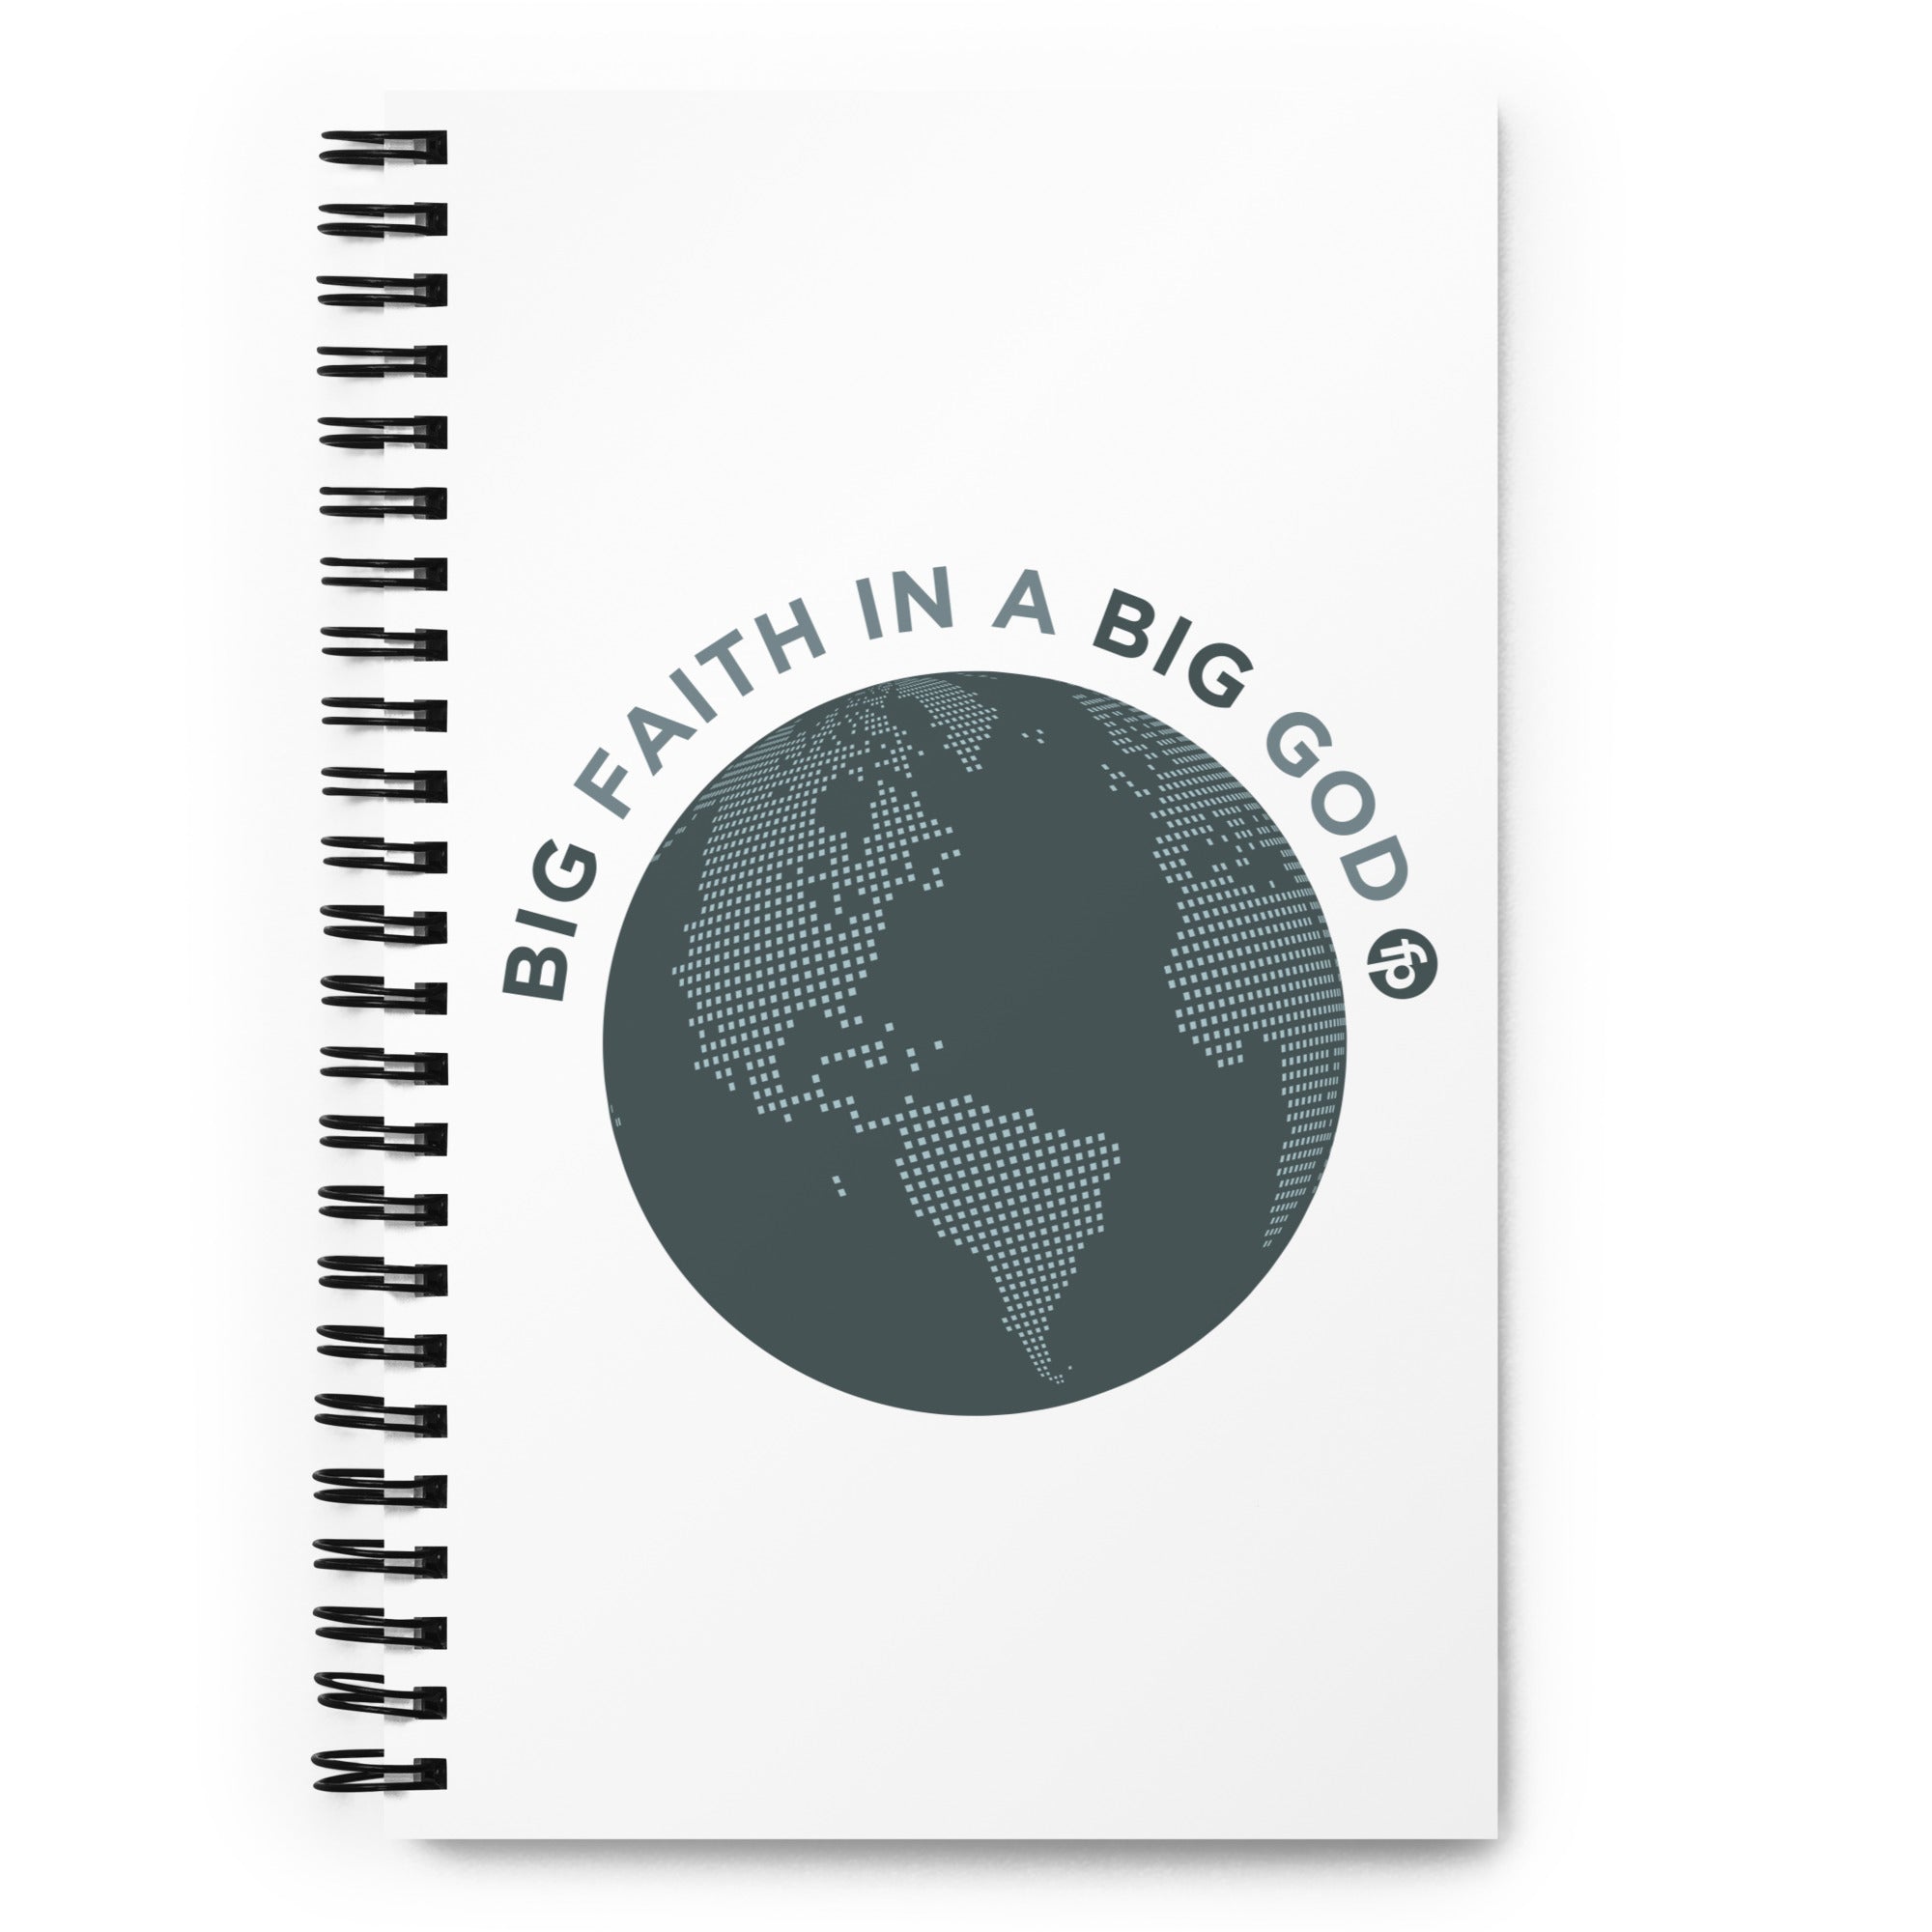 Big Faith Spiral notebook